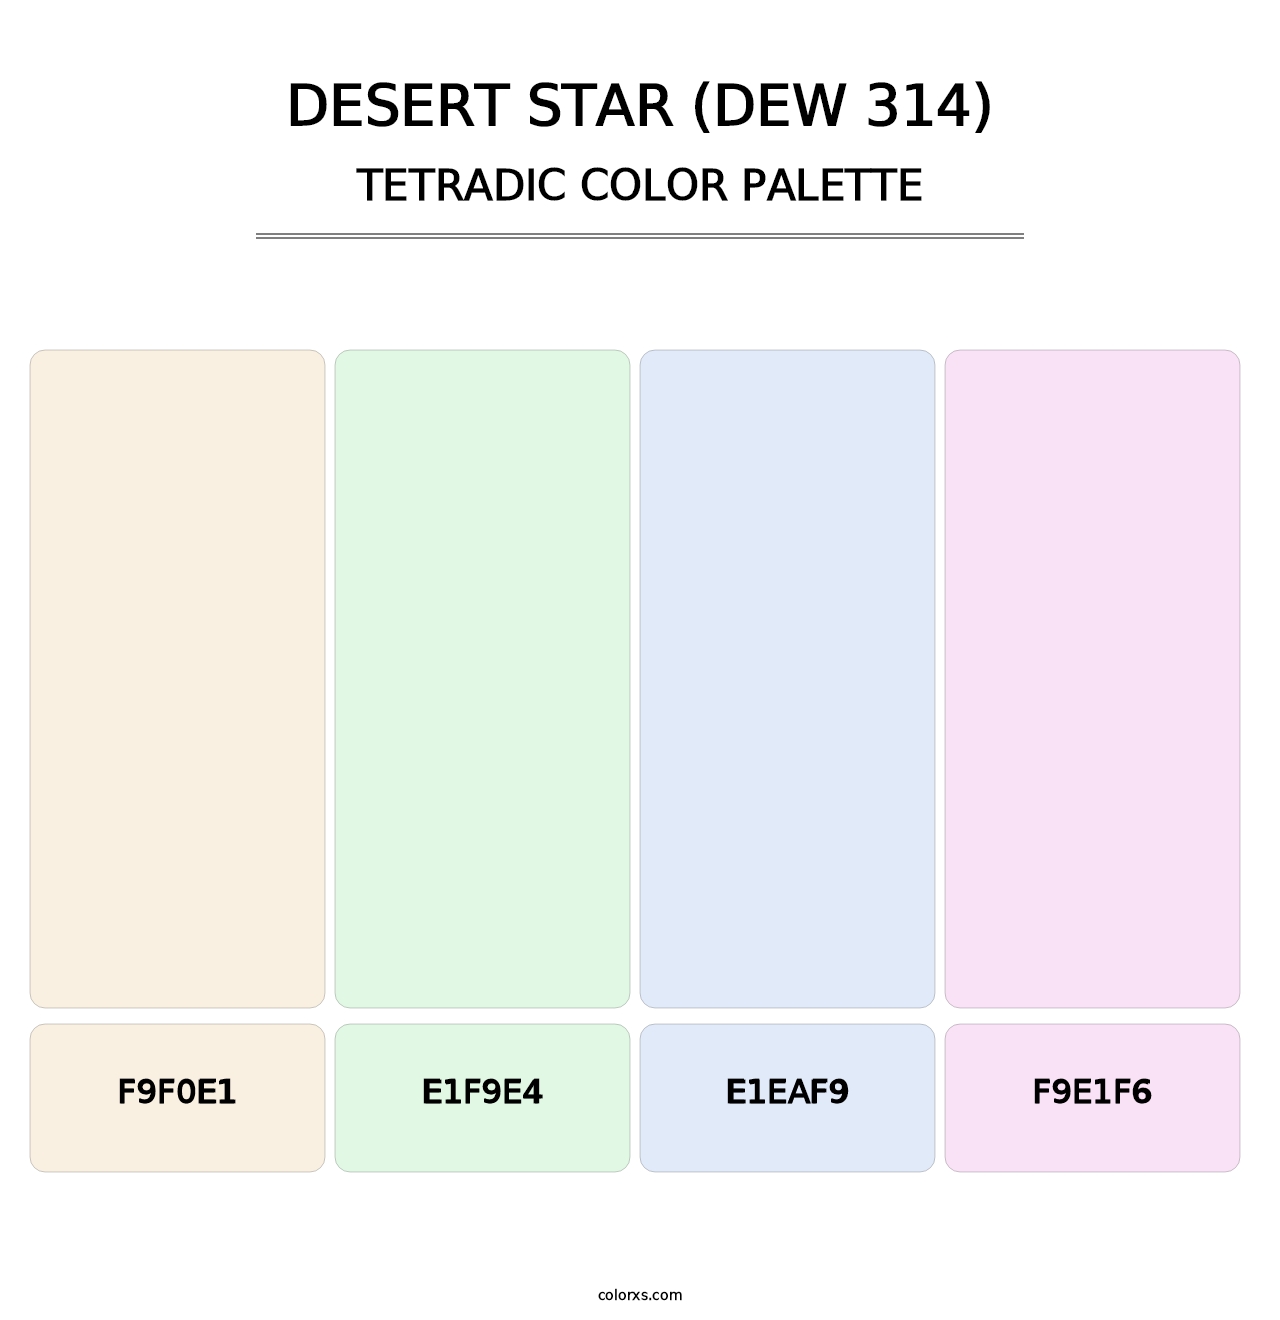 Desert Star (DEW 314) - Tetradic Color Palette